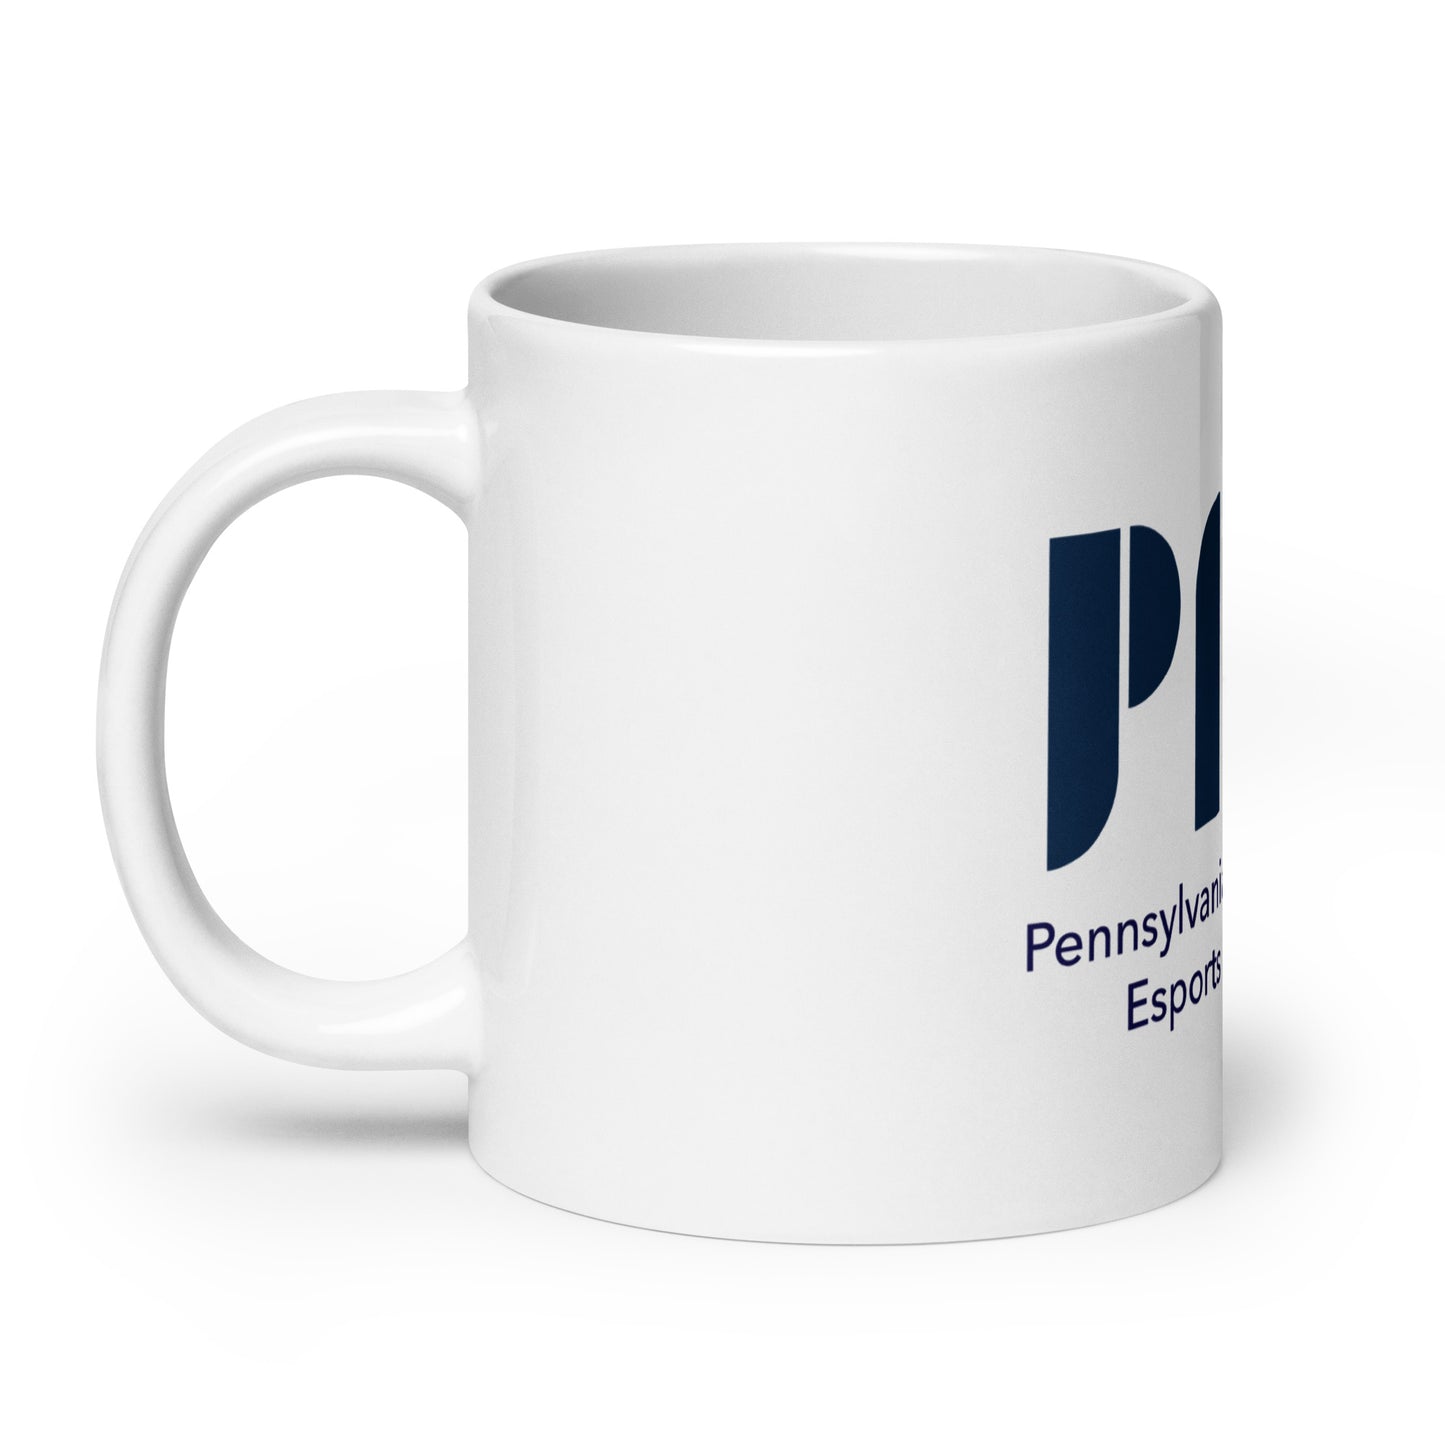 PIEA Coffee Mug